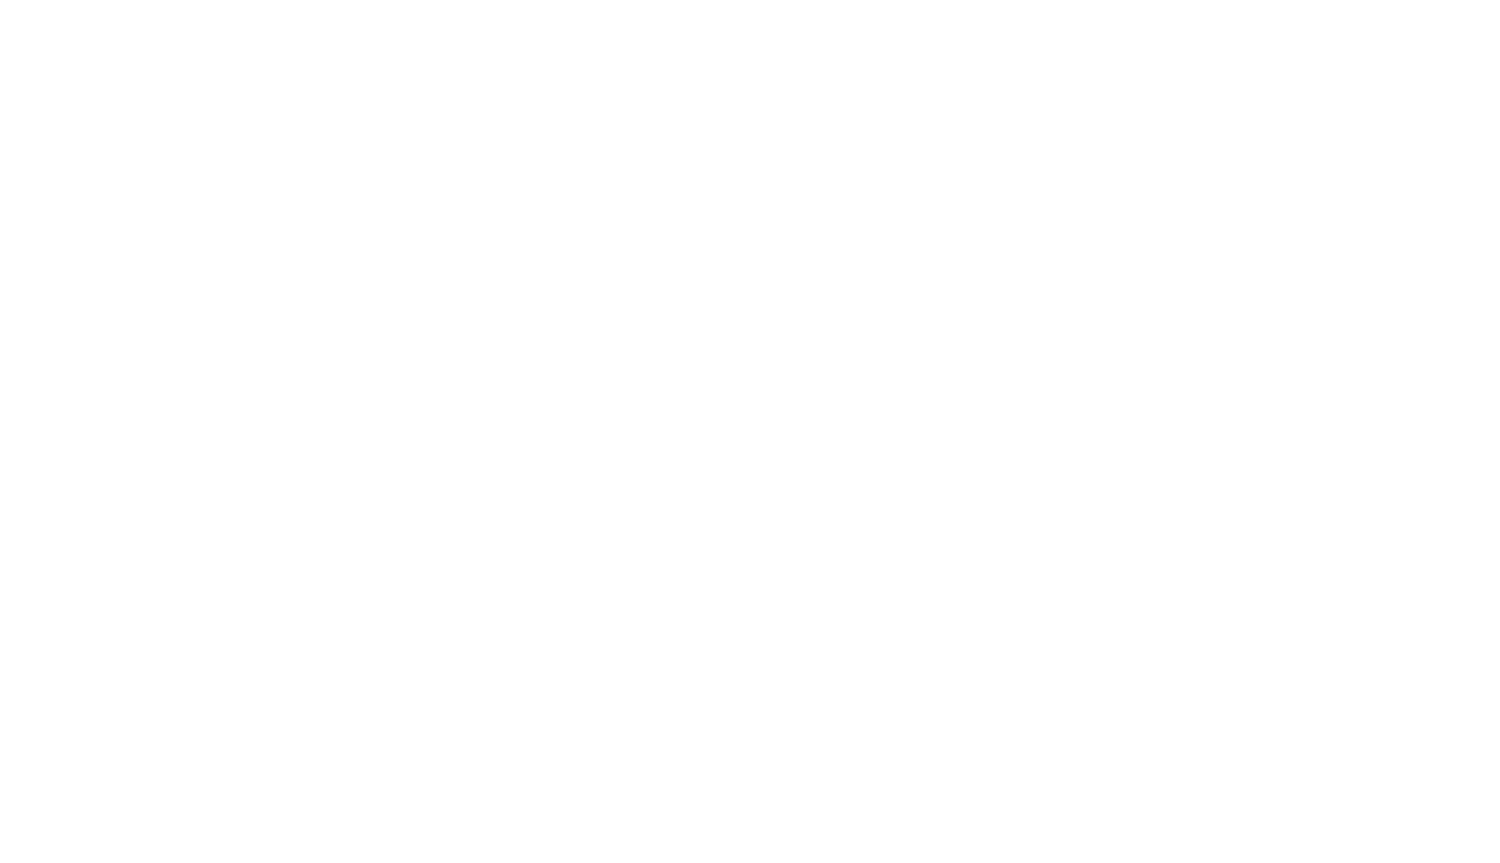 LGBcafe (LITTLE GREEN BAG cafe)